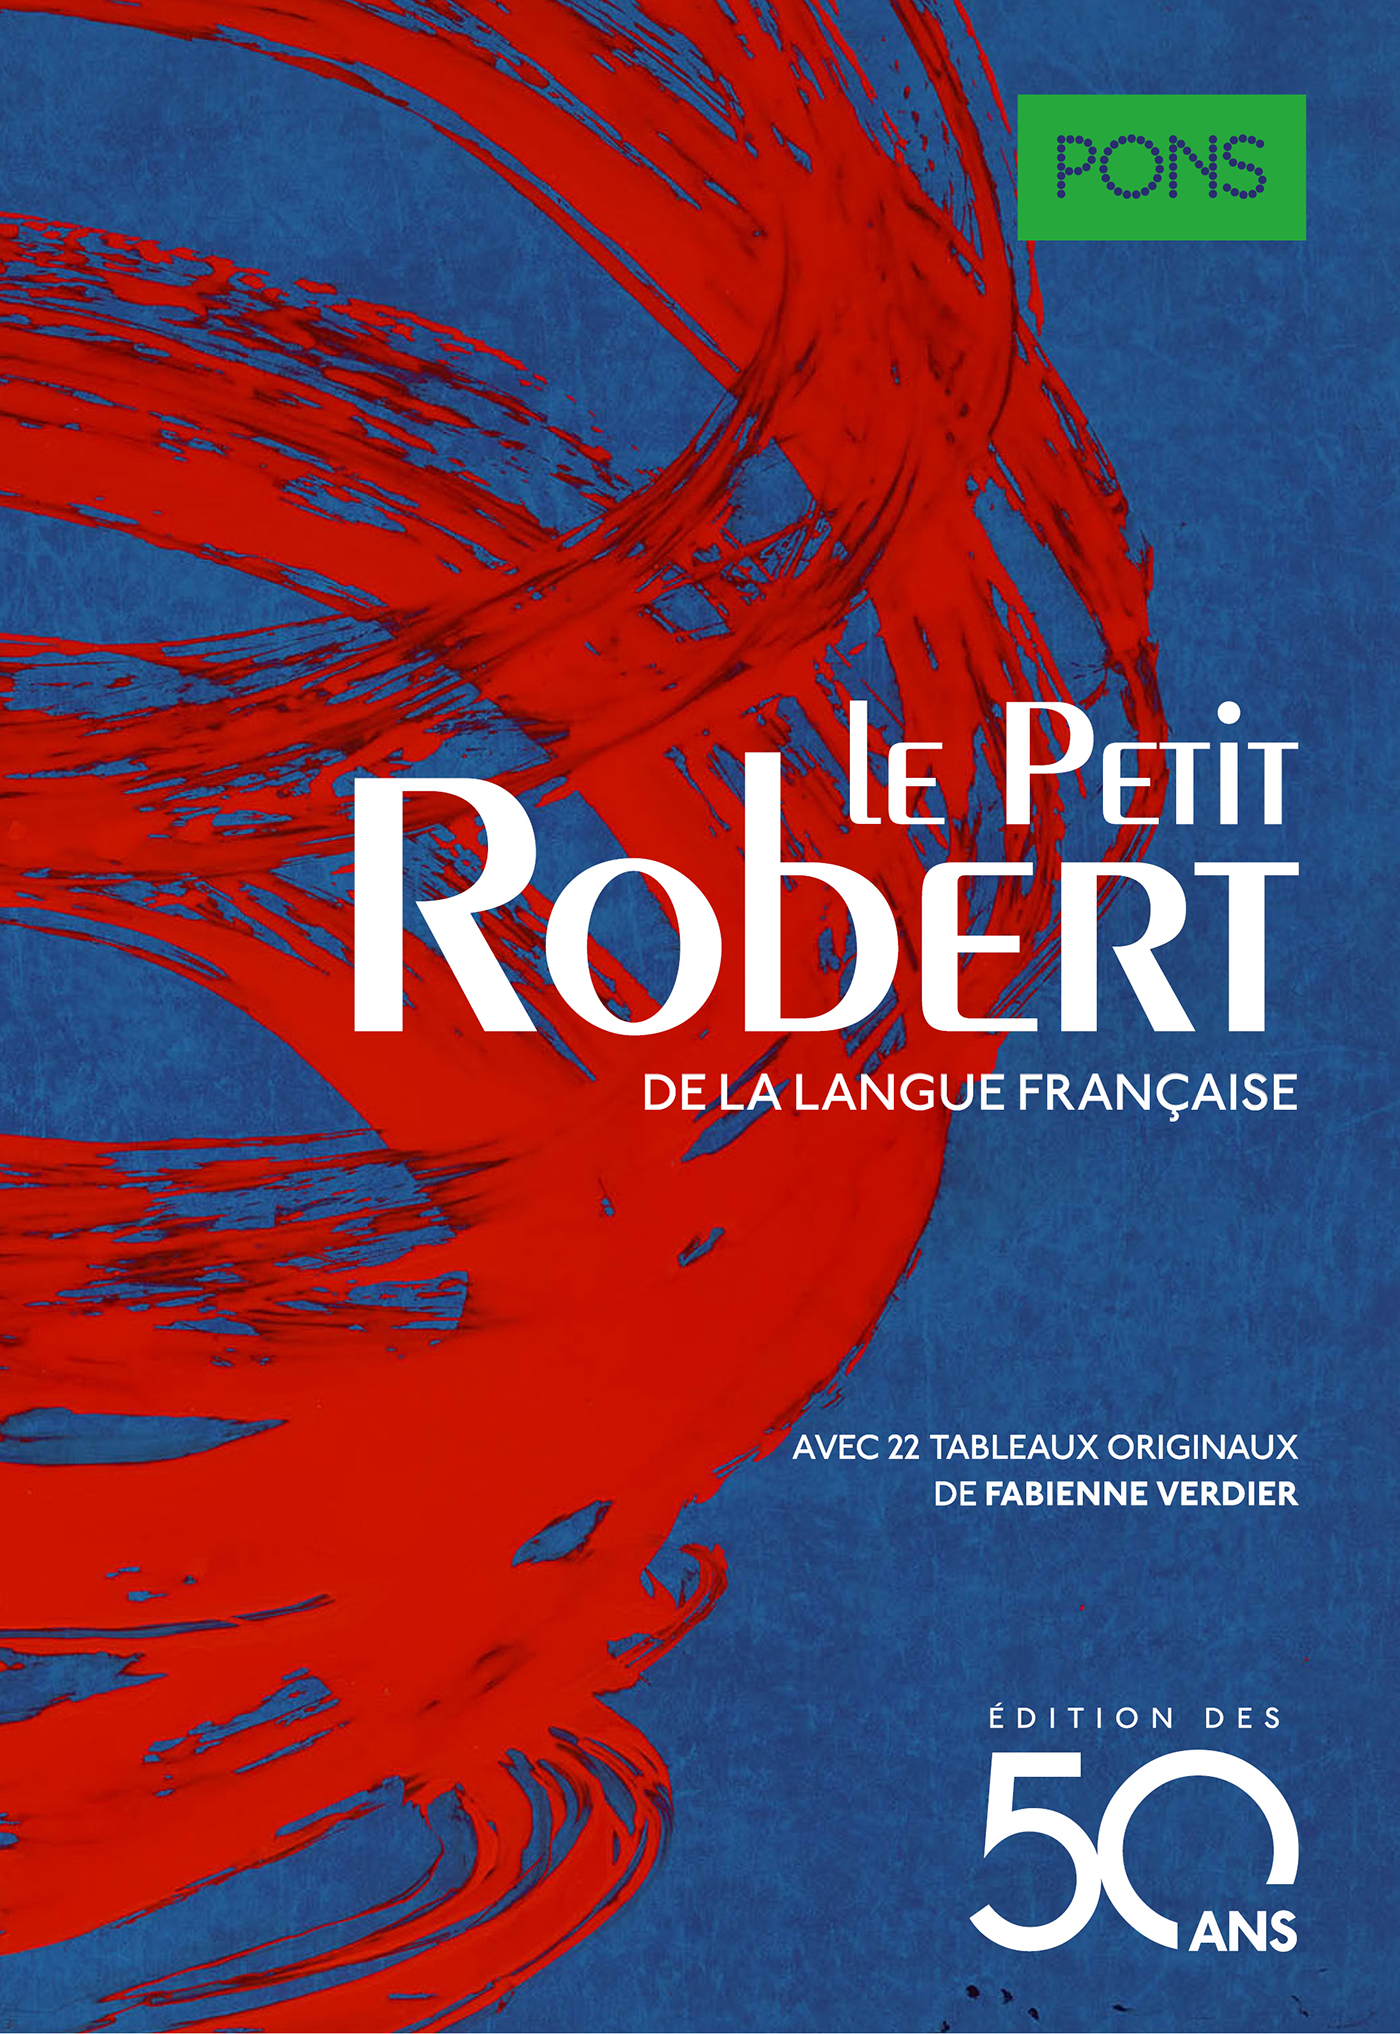 PONS Le Petit Robert 2017/2018